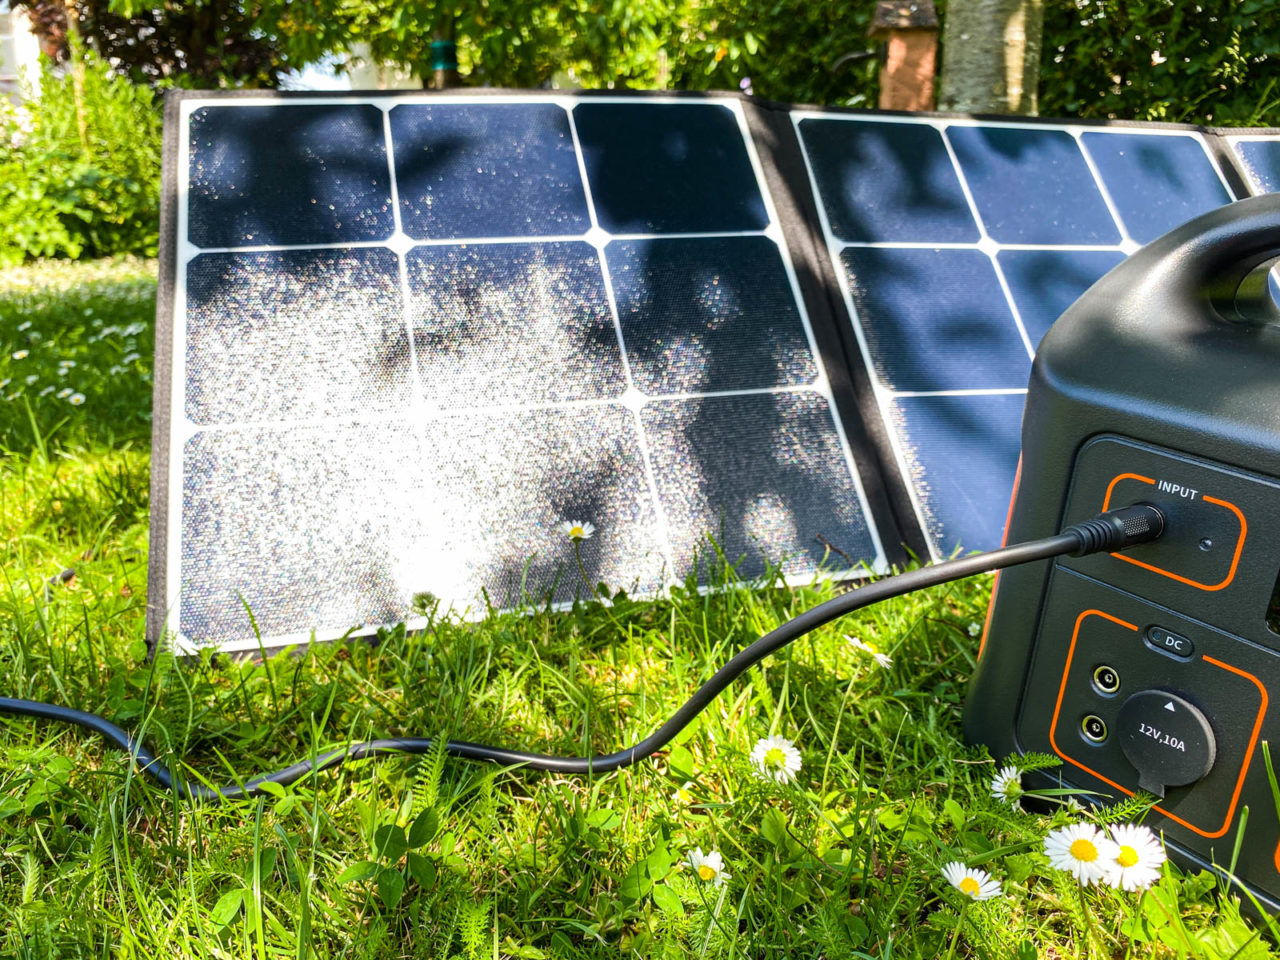 PowerOak Bluetti SP120 Solarpanel Test - Leistung im Schatten, Solartasche an der Power Station unter einem Baum